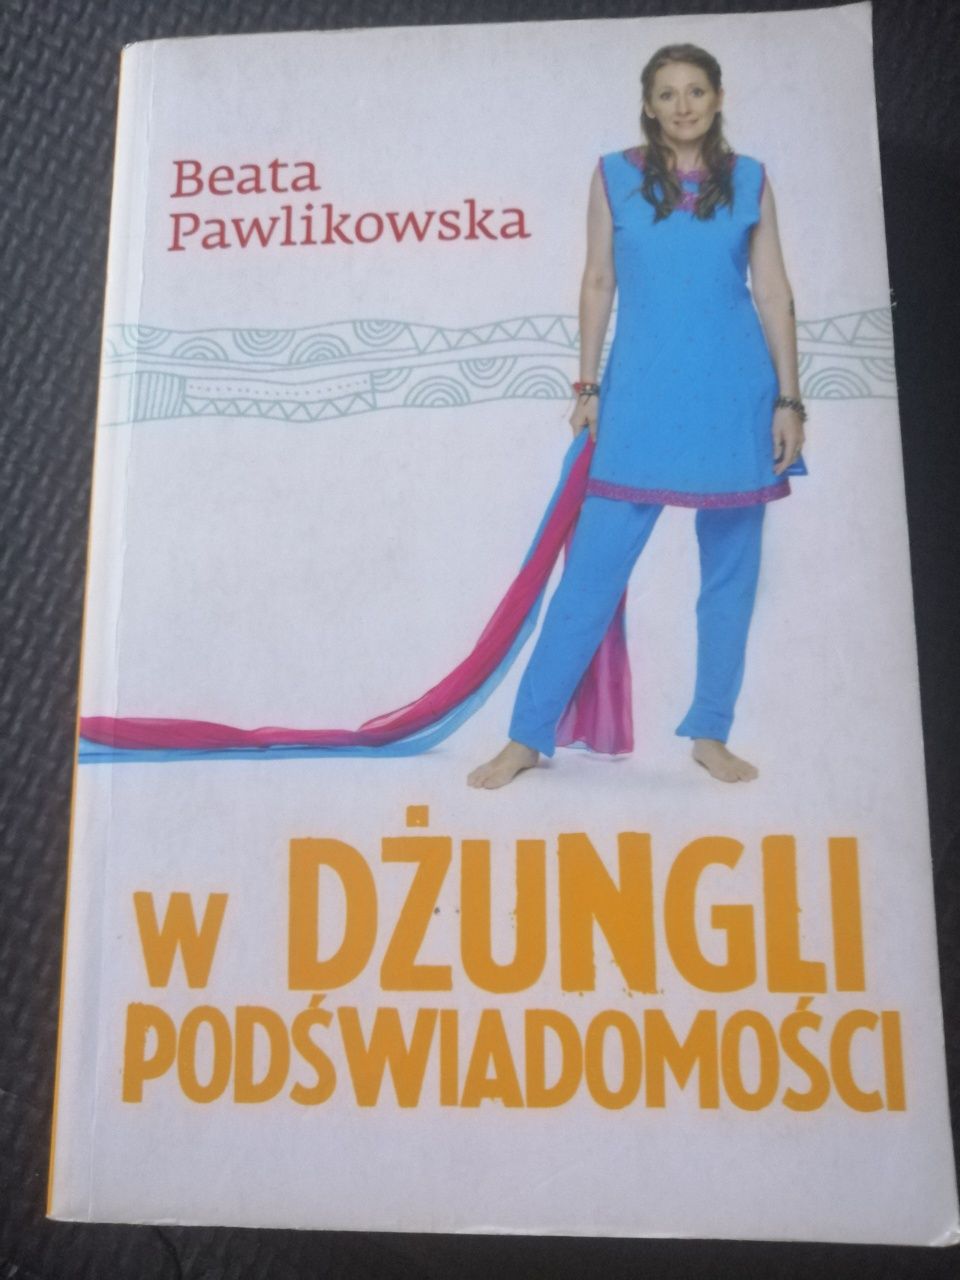 W dzunglii podświadomości Beata Pawlikowska